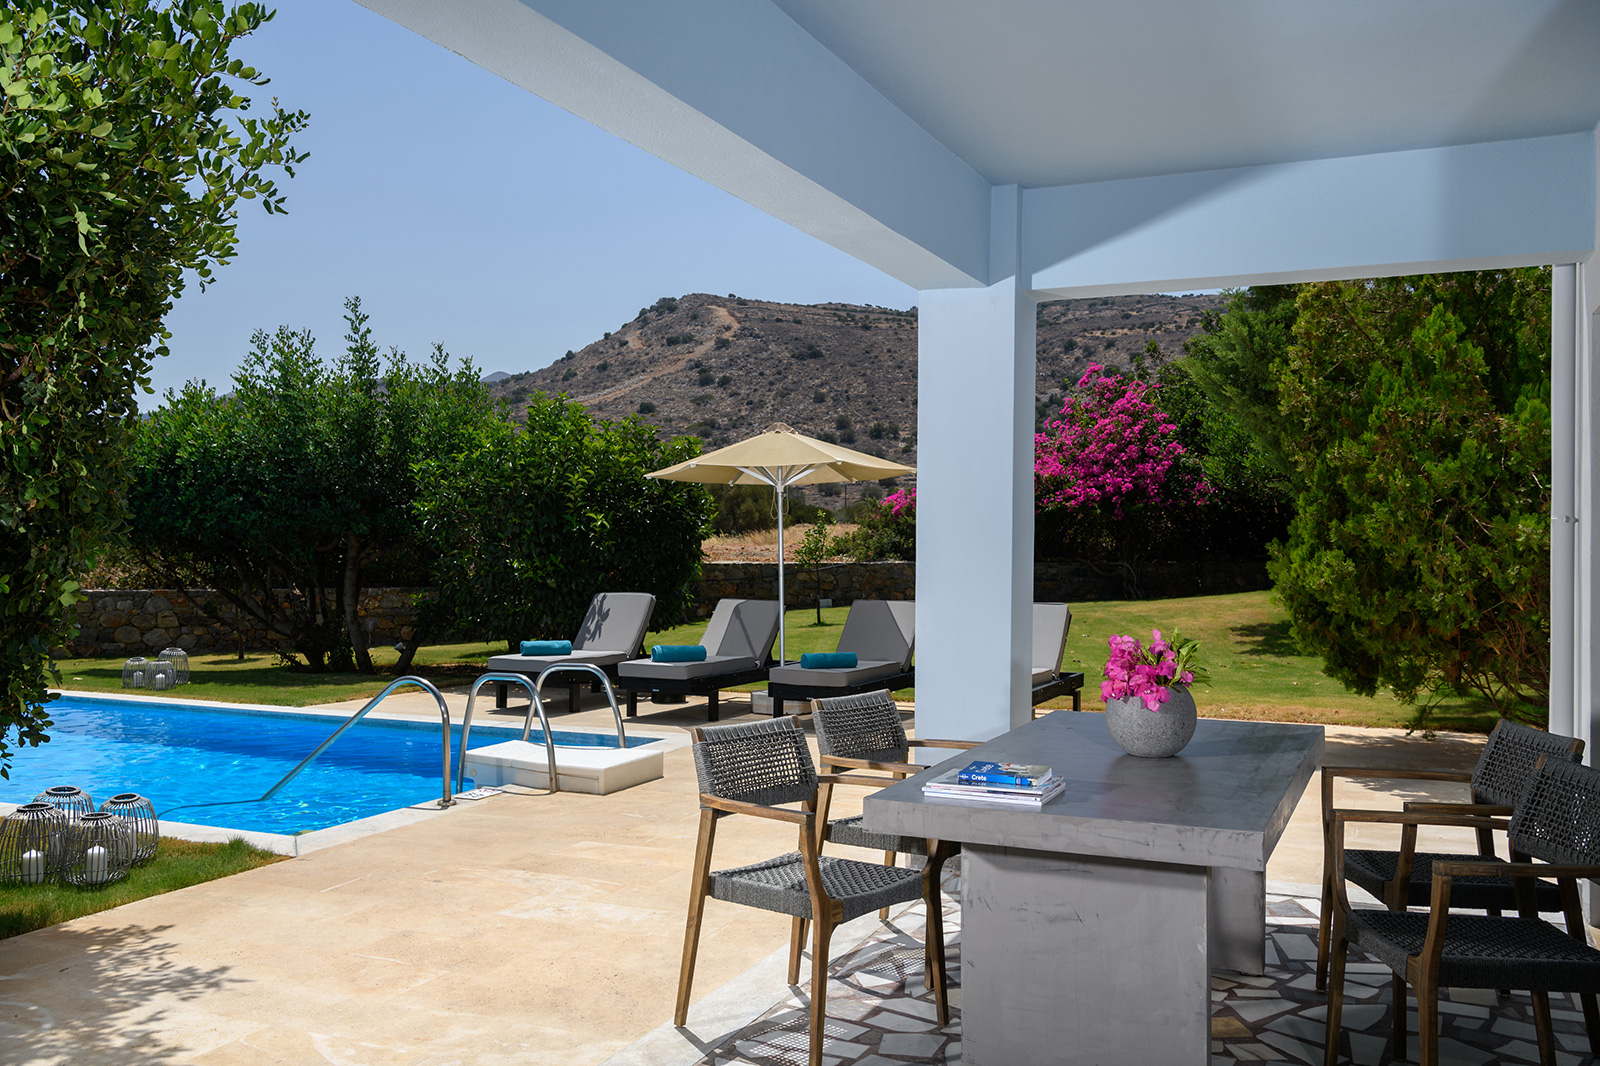 Ferienvilla mit Pool am Meer mieten auf Kreta Griechenland
